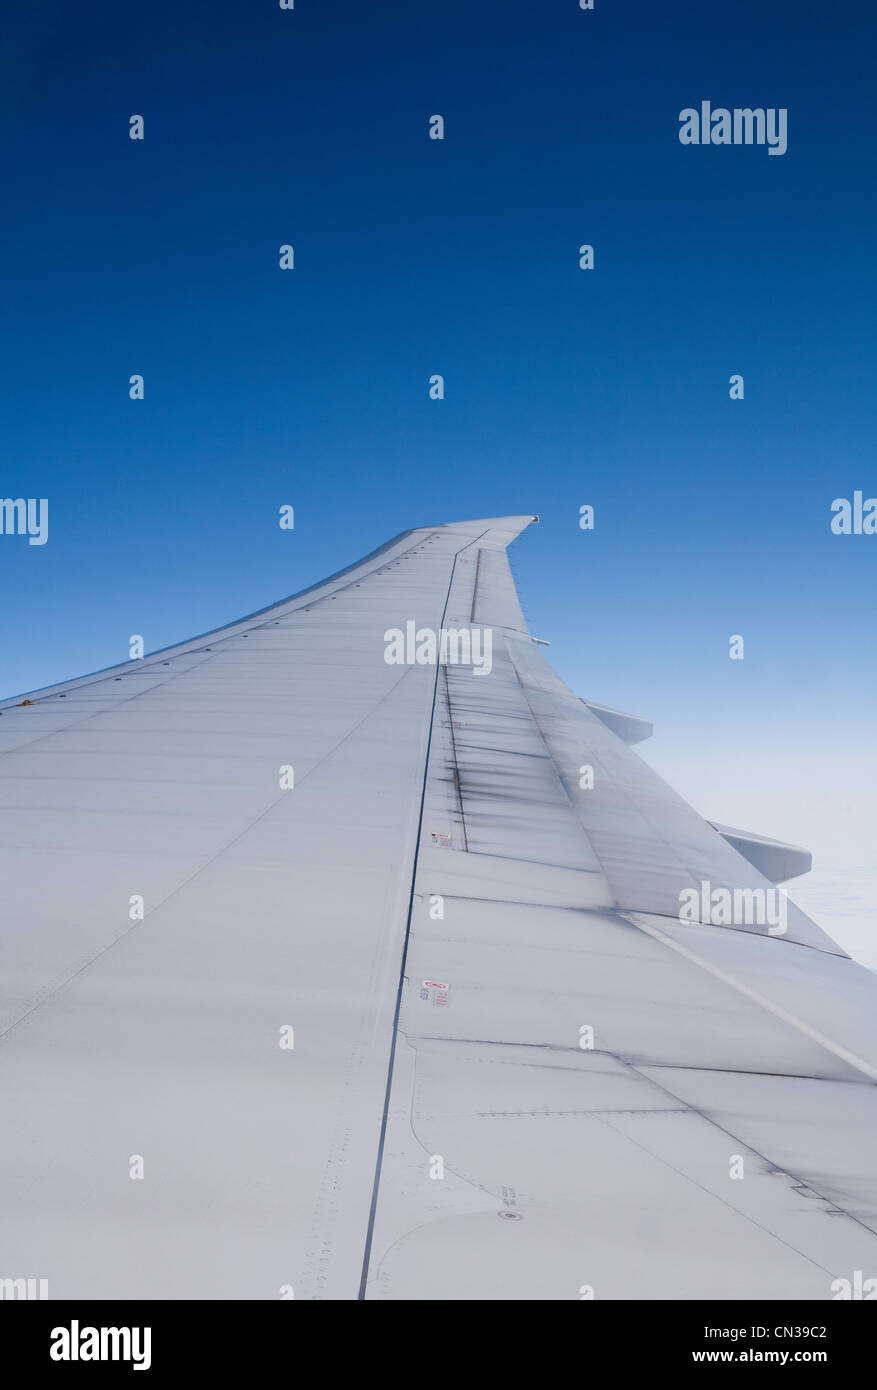 Ala di aeroplano visto dall'interno di aviogetti Foto Stock